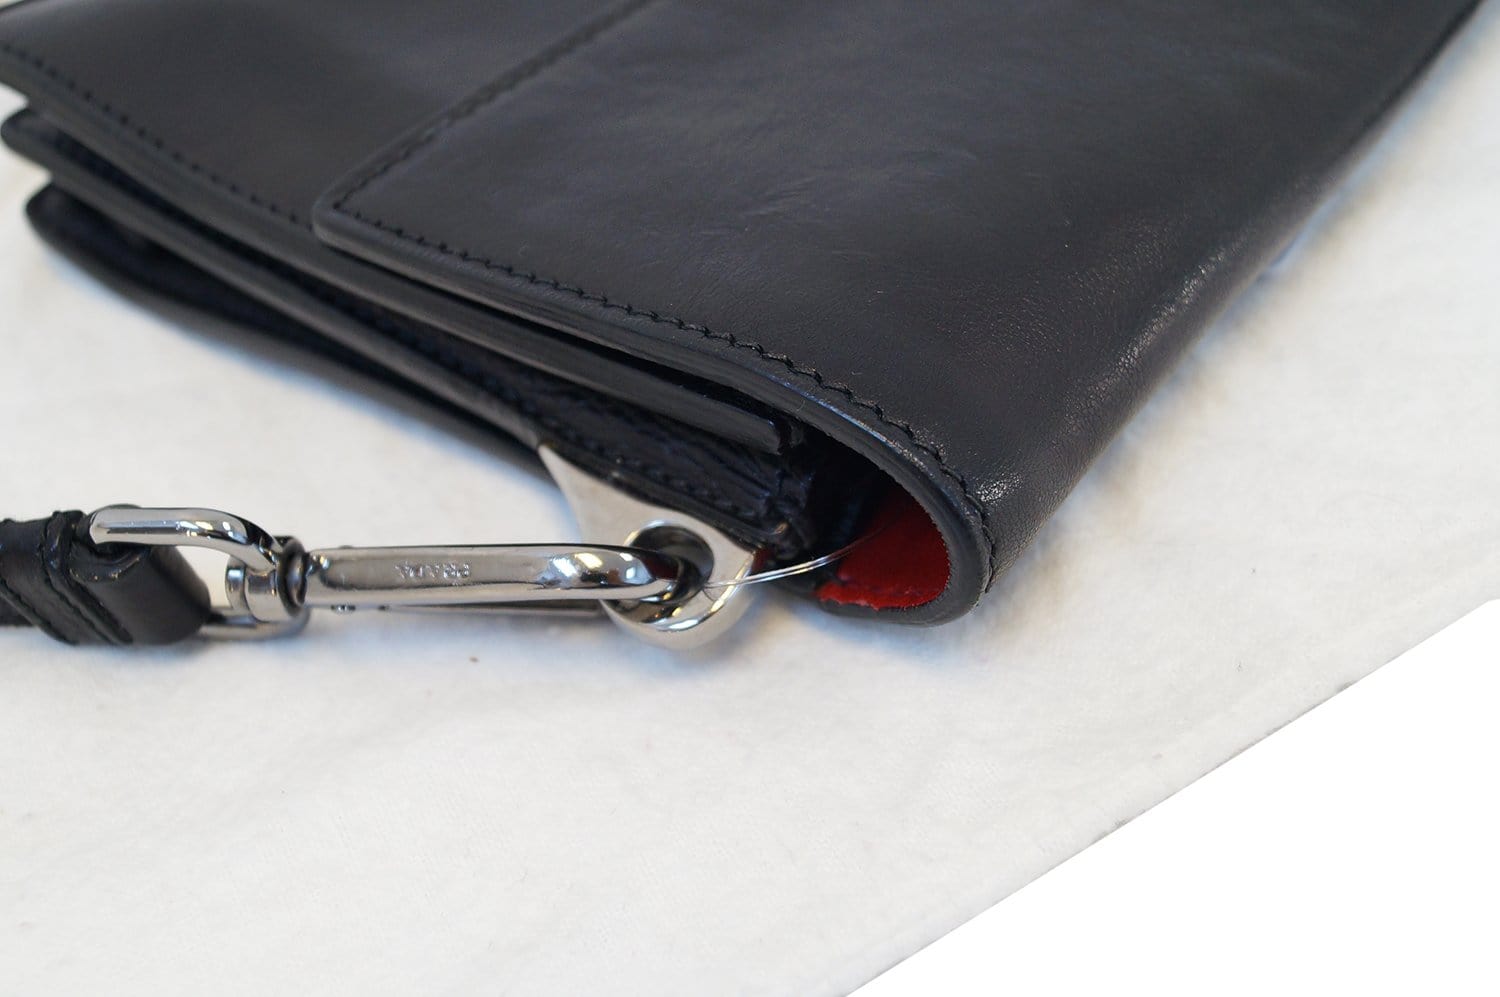 Saffiano leather crossbody bag Prada Grey in Leather - 32575748